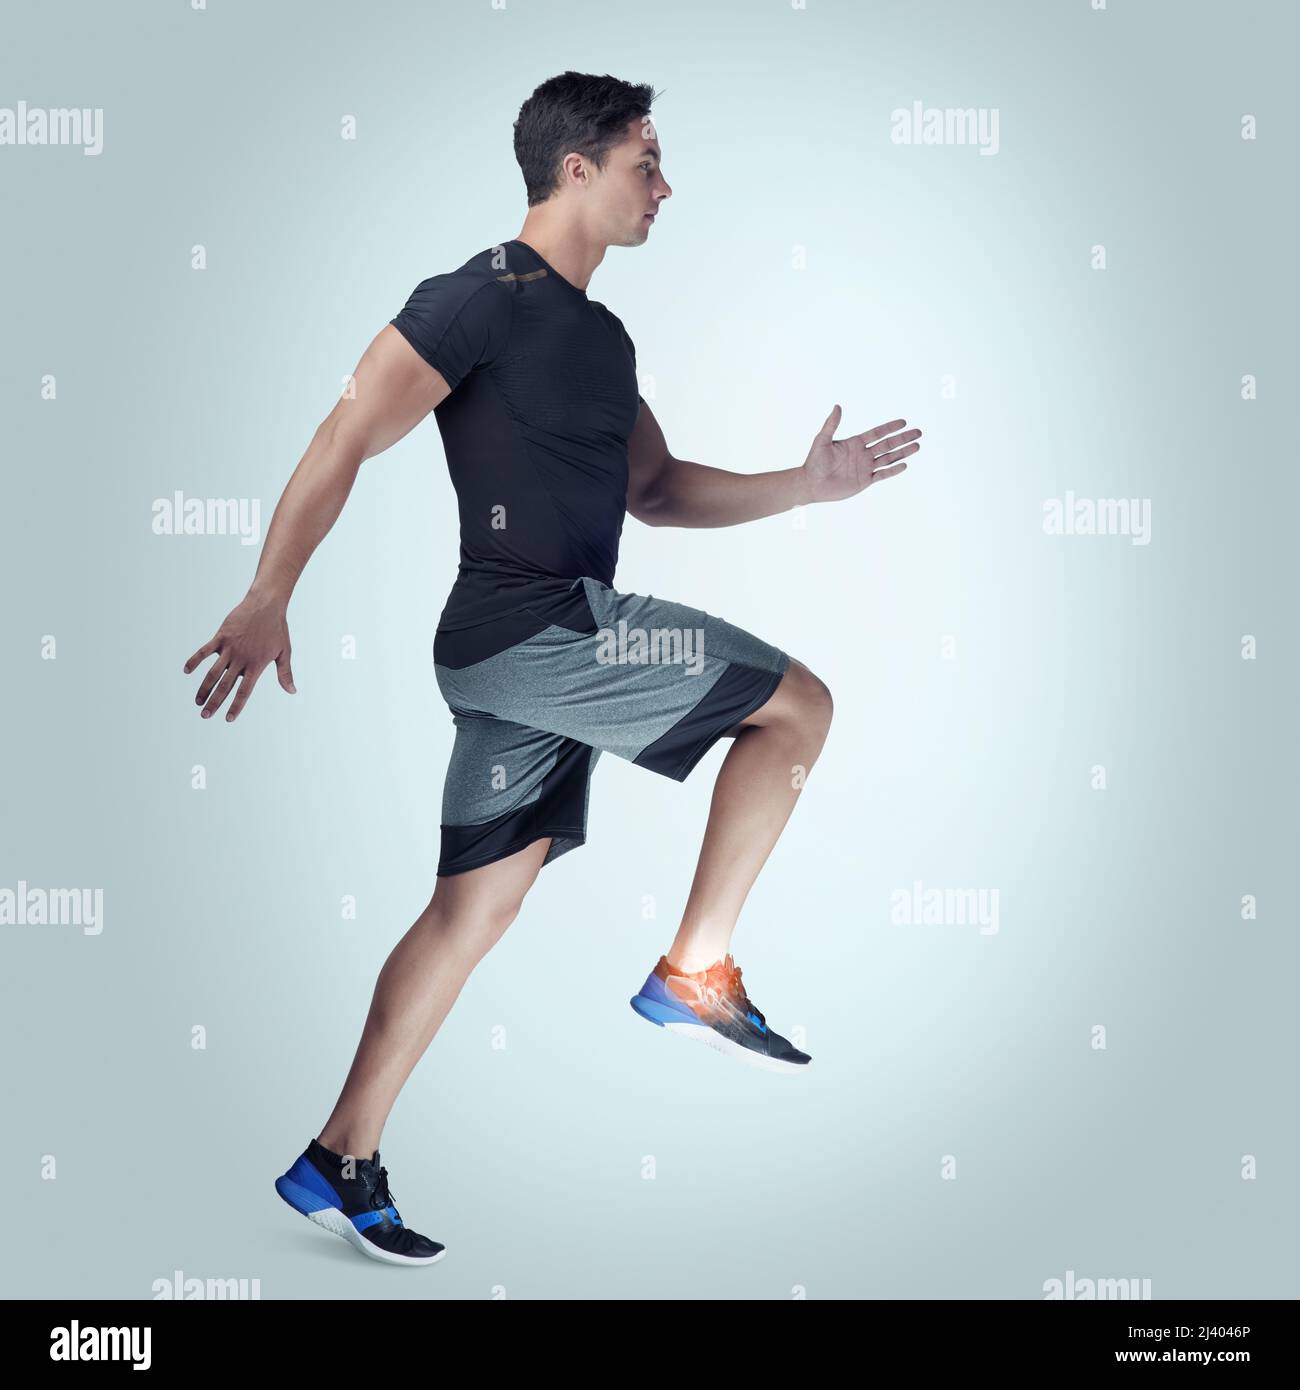 Gardez les limites de votre bodys à l'esprit. Photo en studio d'un jeune homme sportif qui court sur fond gris. Banque D'Images